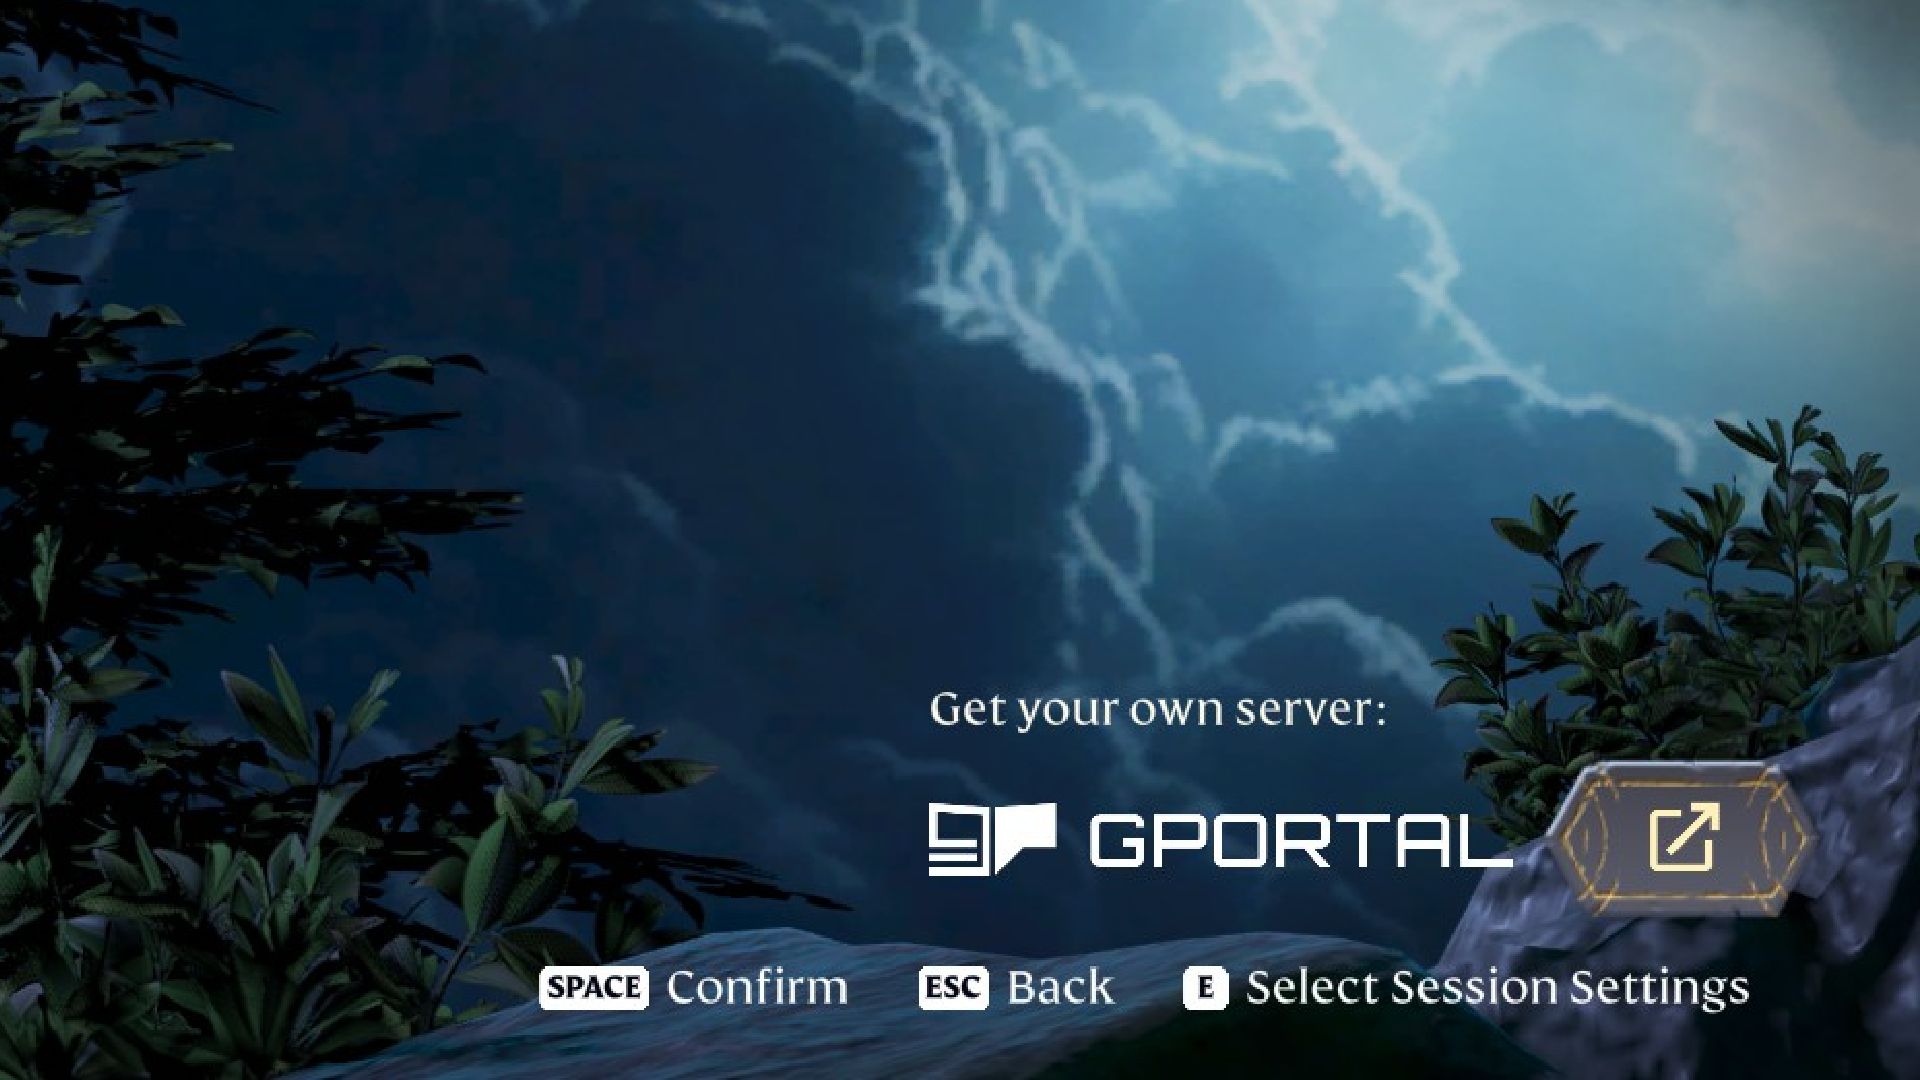 enshrouded gportal icon on server selection screen